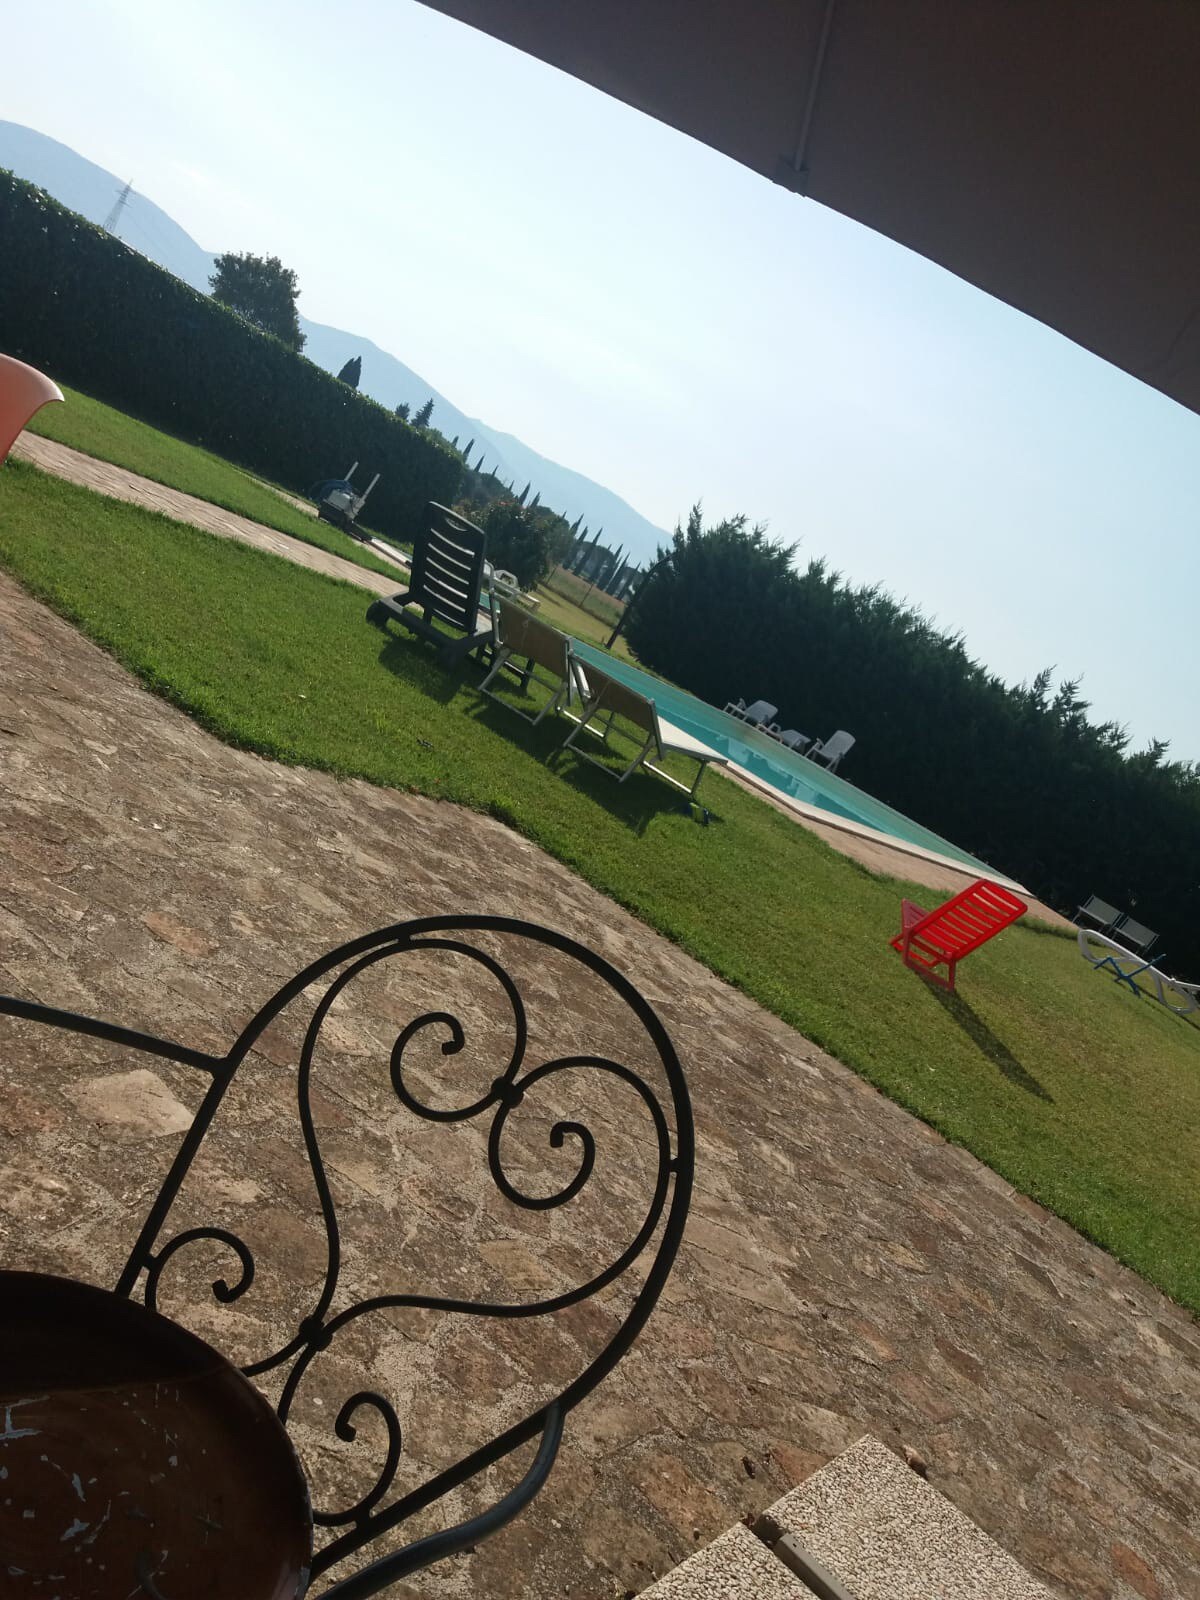 Accoglienti camere in B&B con piscina 
In Umbria